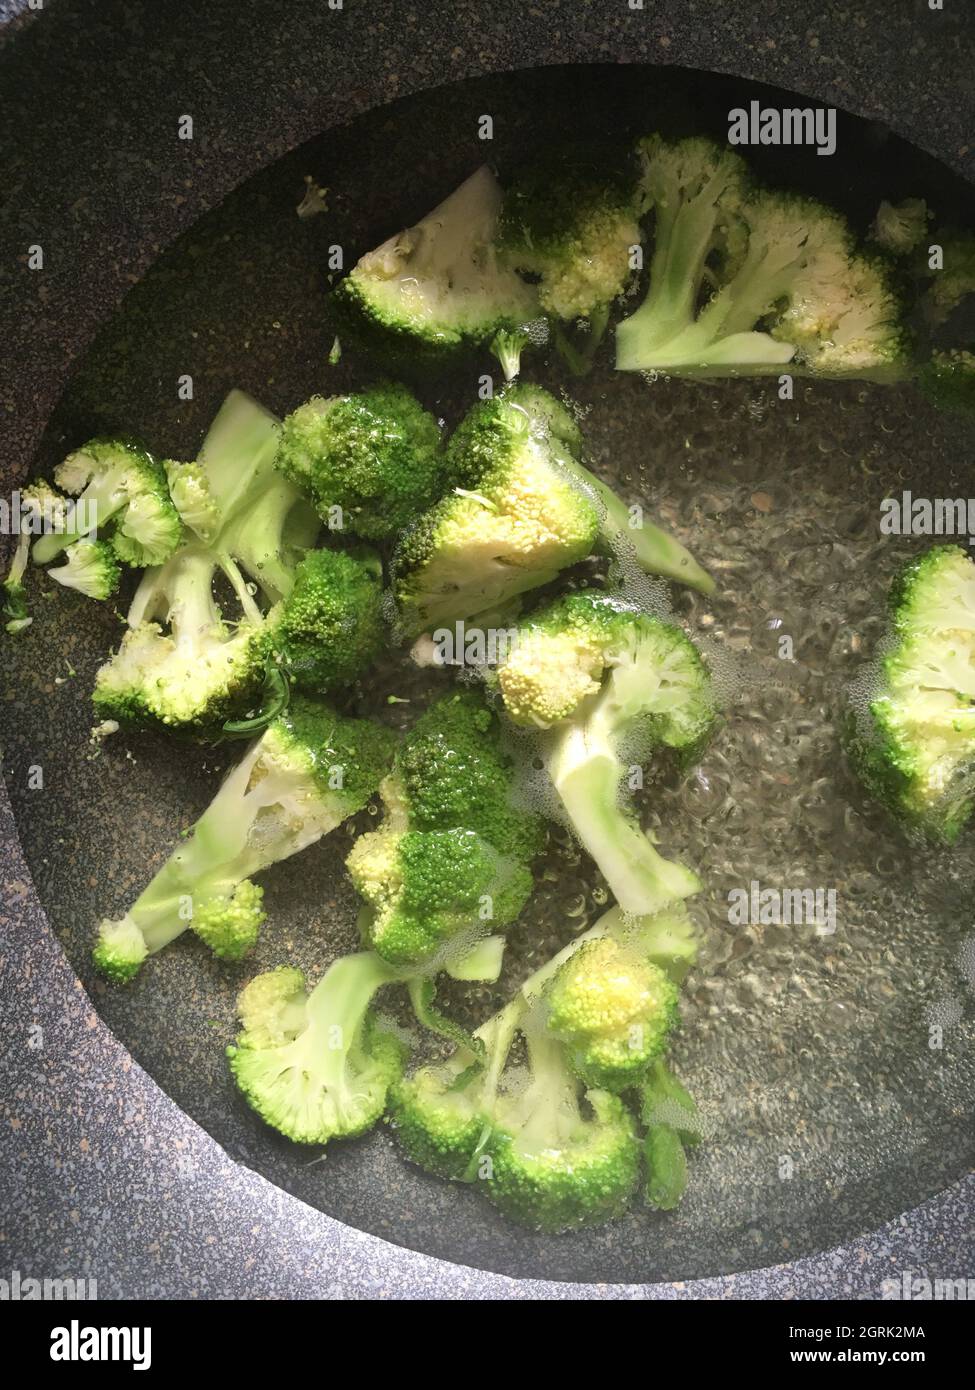 Vue en grand angle des légumes brocoli hachés dans la casserole Banque D'Images